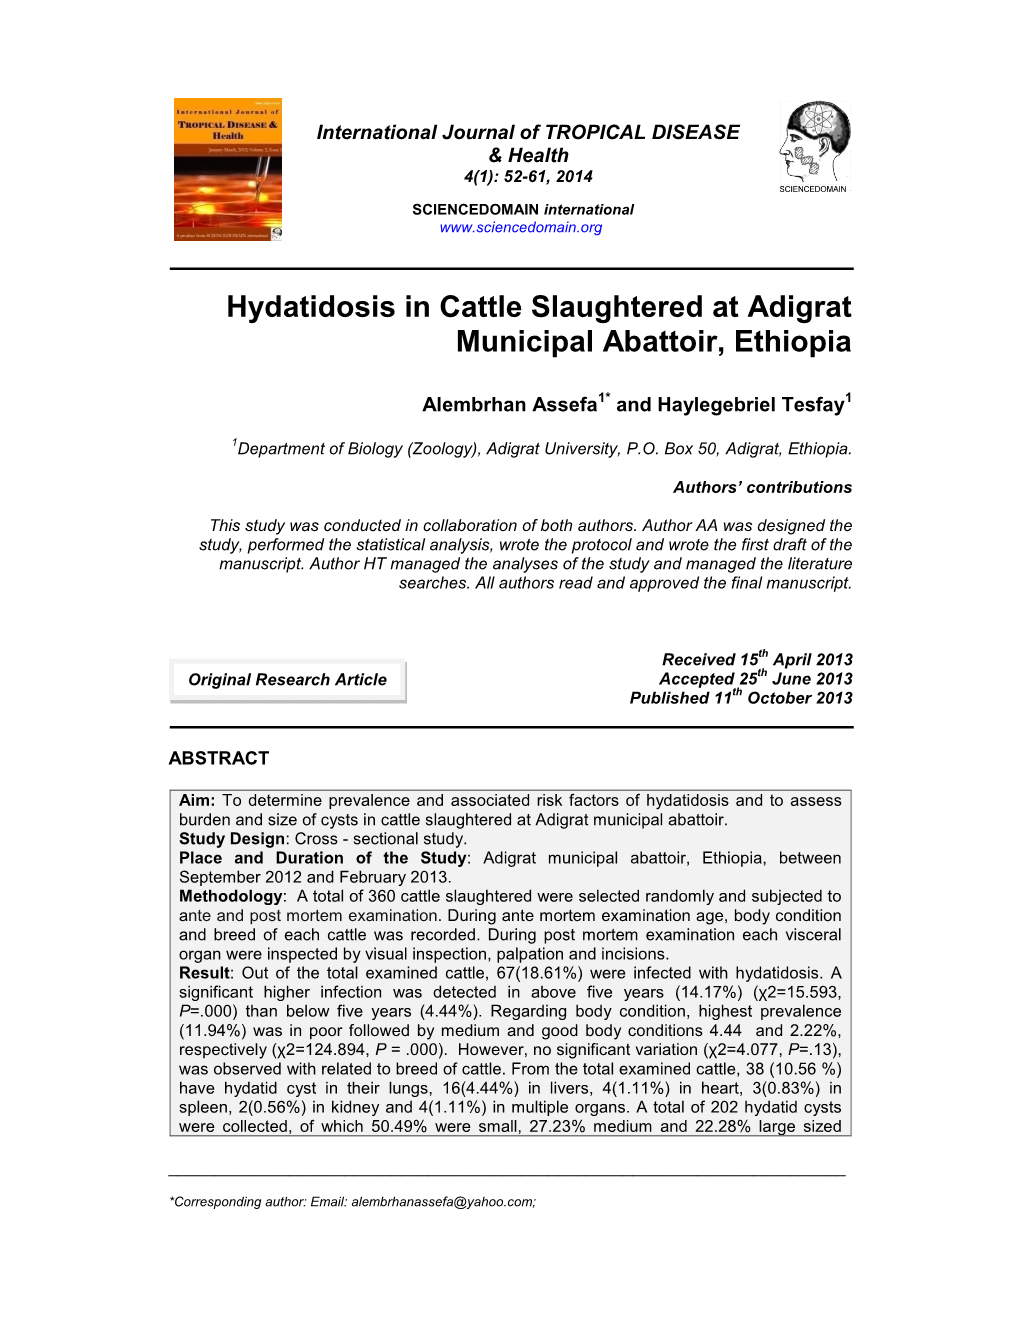 Hydatidosis in Cattle Slaughtered at Adigrat Municipal Abattoir, Ethiopia